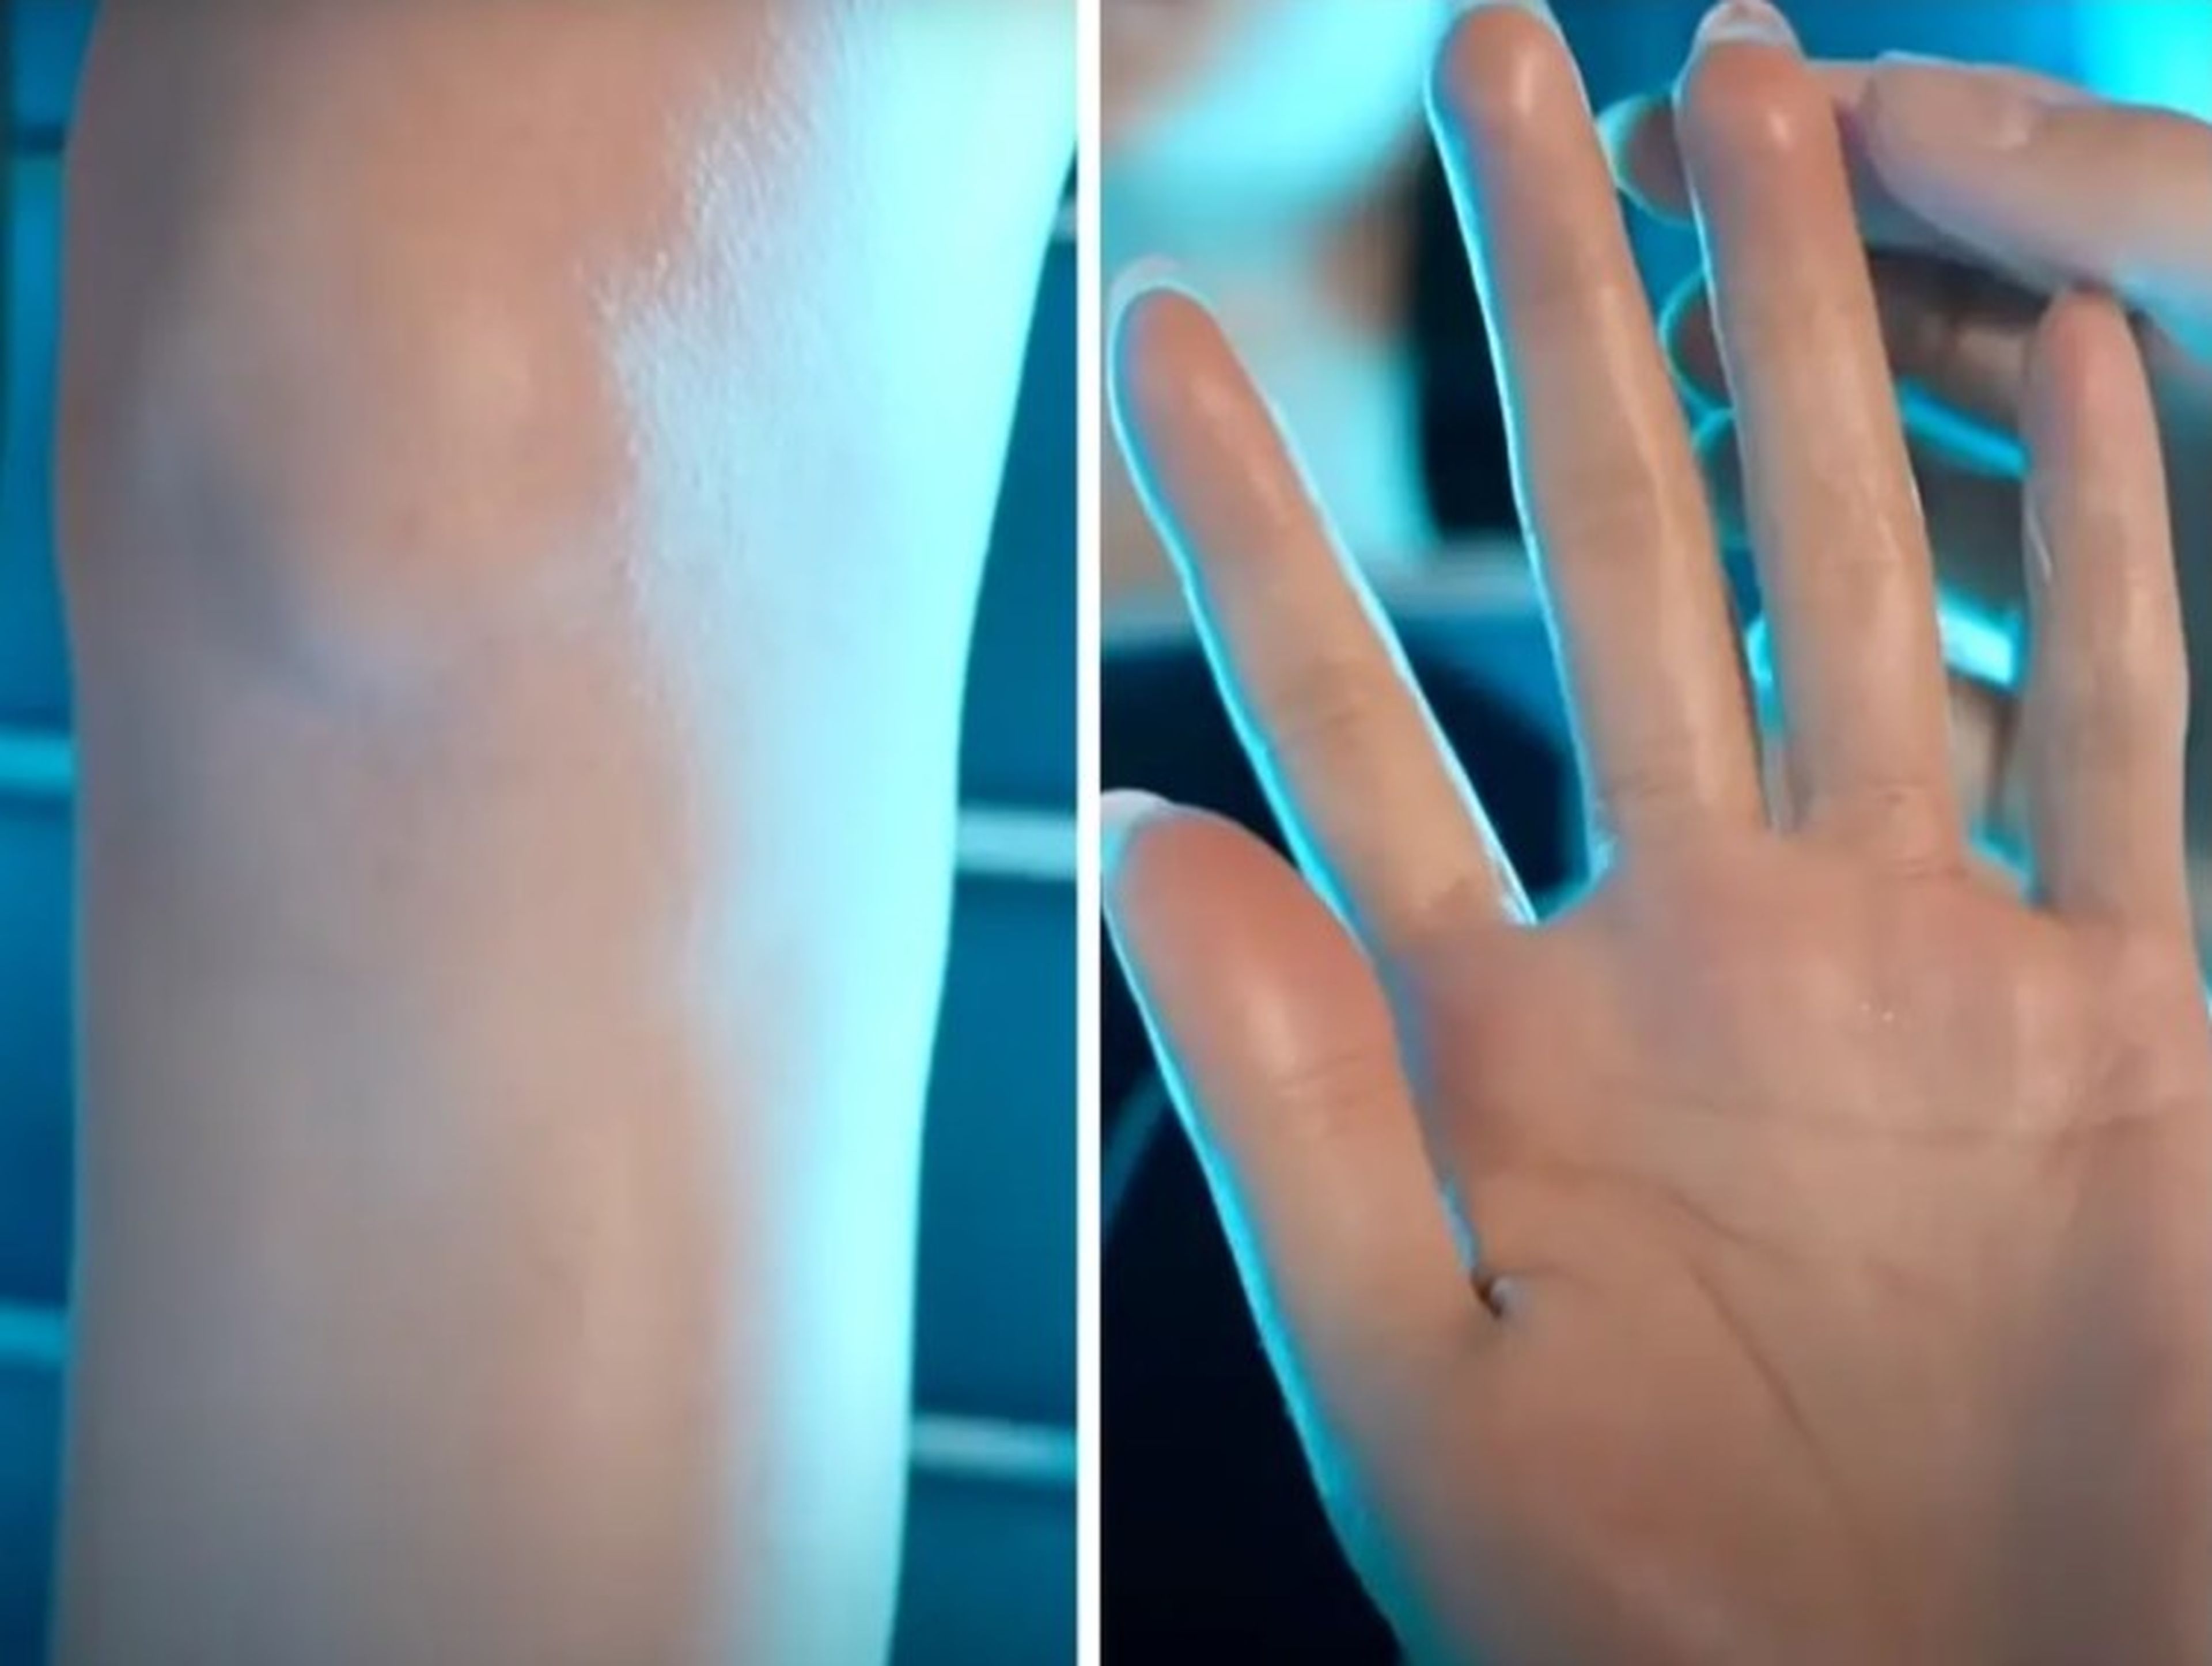 Los robots del museo han sido diseñados para tener piel de gallina en su "piel" de silicona (izquierda) y líneas en sus palmas y dedos (derecha).